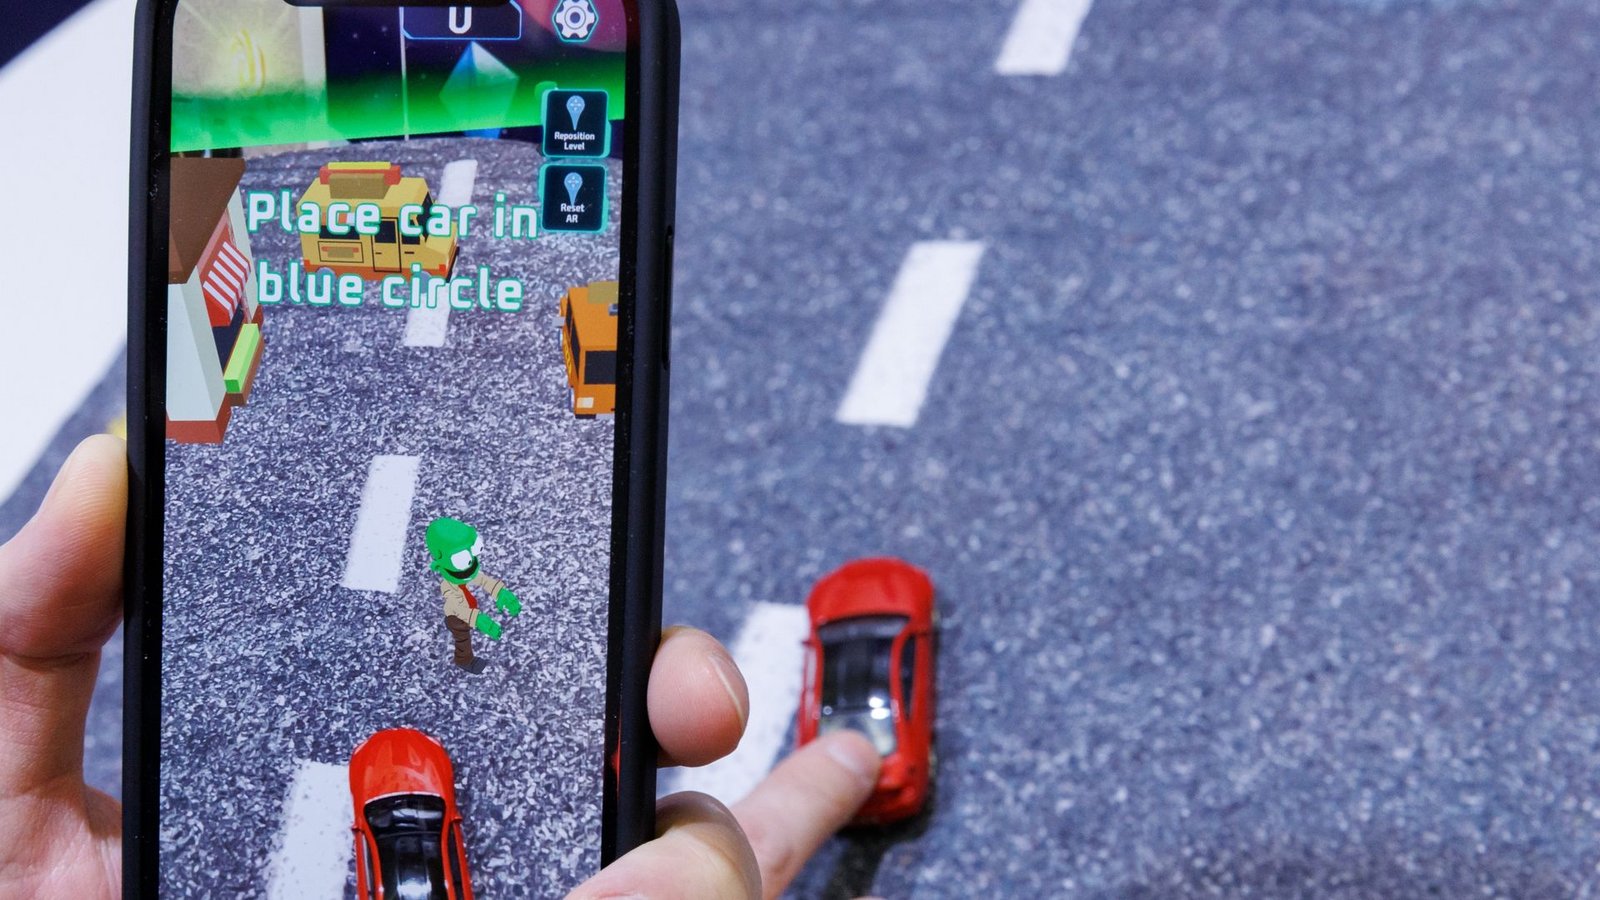 Mittels Smartphone, welches ein reales Spielzeugauto mit der Kamera erfasst, wird beim Spiel "Zombie Crasher AR" von Augmented Robotics eine virtuelle Straßenszene dargestellt.Foto: Daniel Karmann/dpa